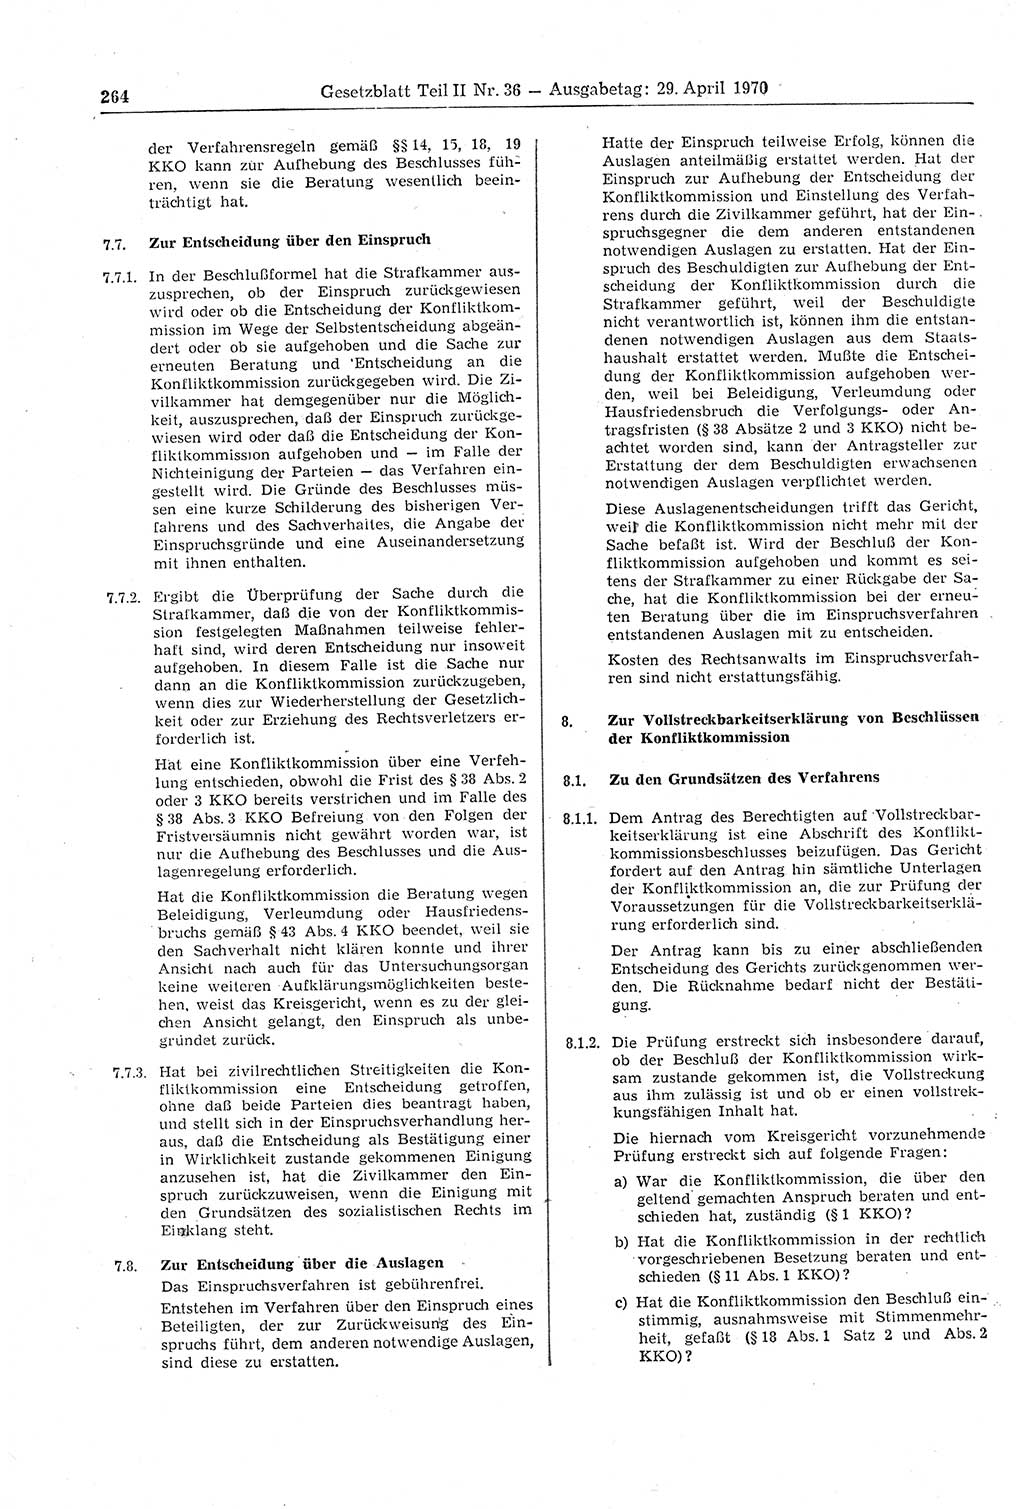 Gesetzblatt (GBl.) der Deutschen Demokratischen Republik (DDR) Teil ⅠⅠ 1970, Seite 264 (GBl. DDR ⅠⅠ 1970, S. 264)